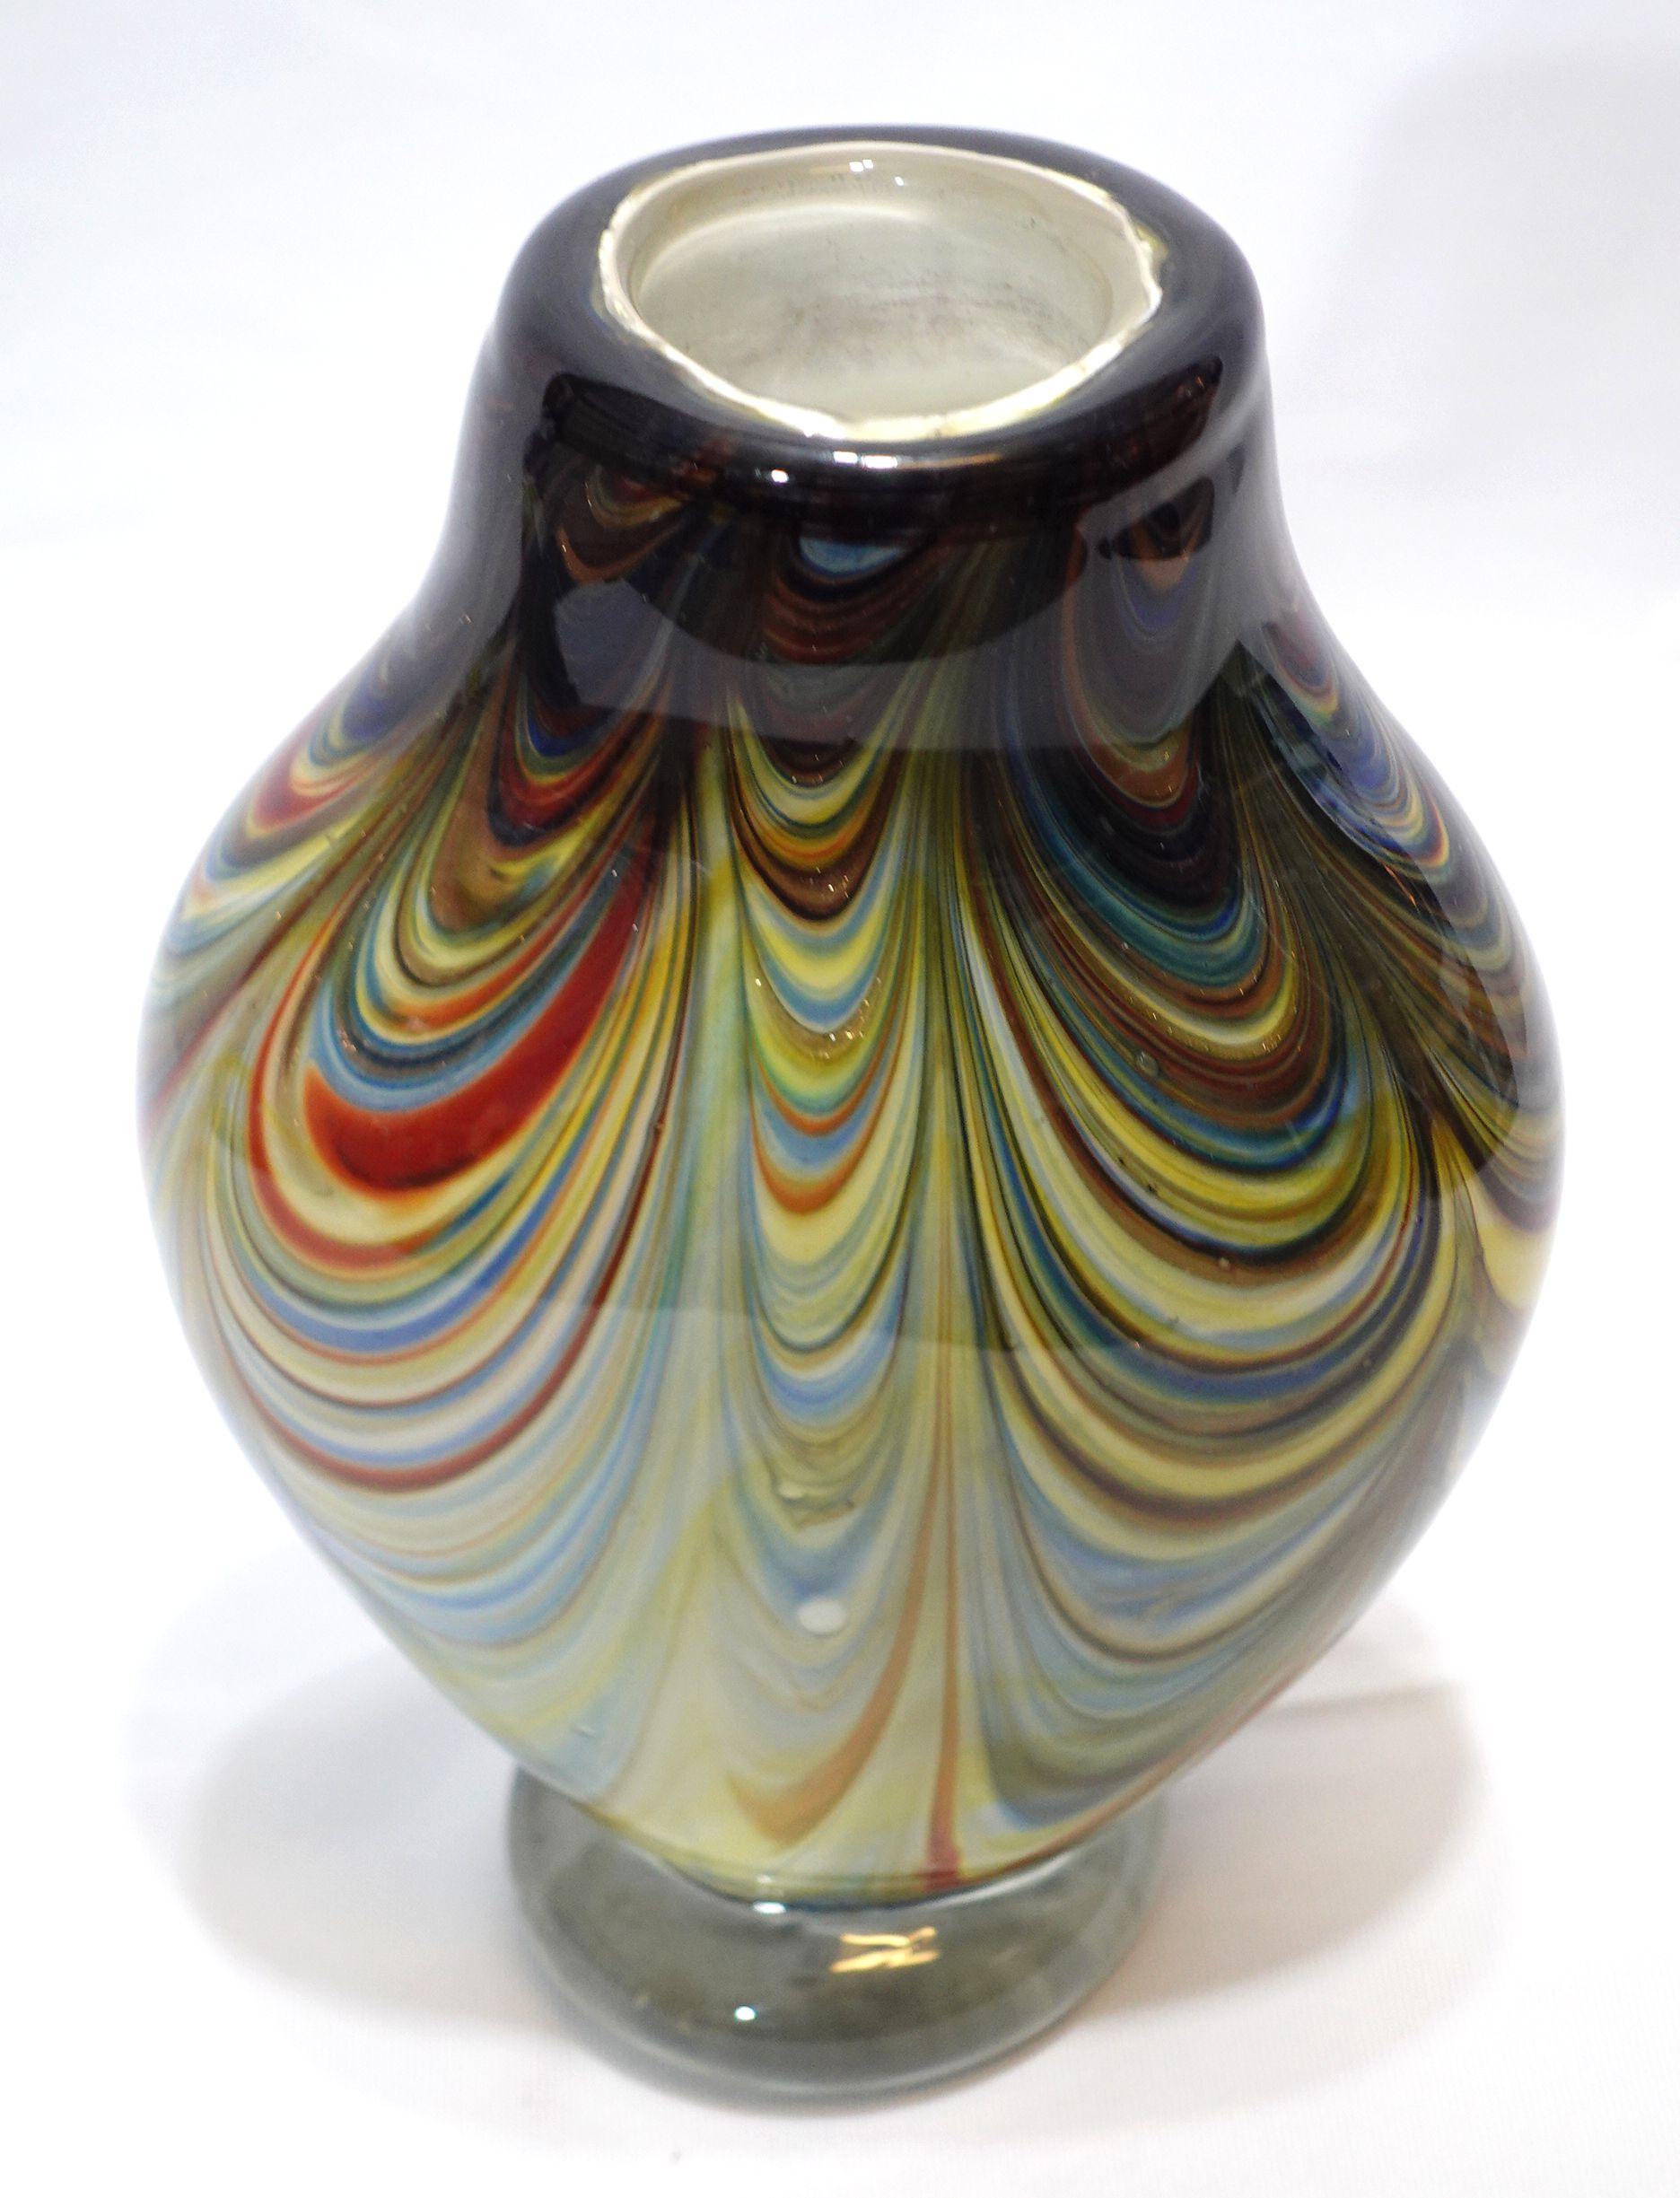 Grand et lourd objet en verre soufflé à la main de Murano  Vase en verre avec des motifs ondulés colorés sur tout le corps.